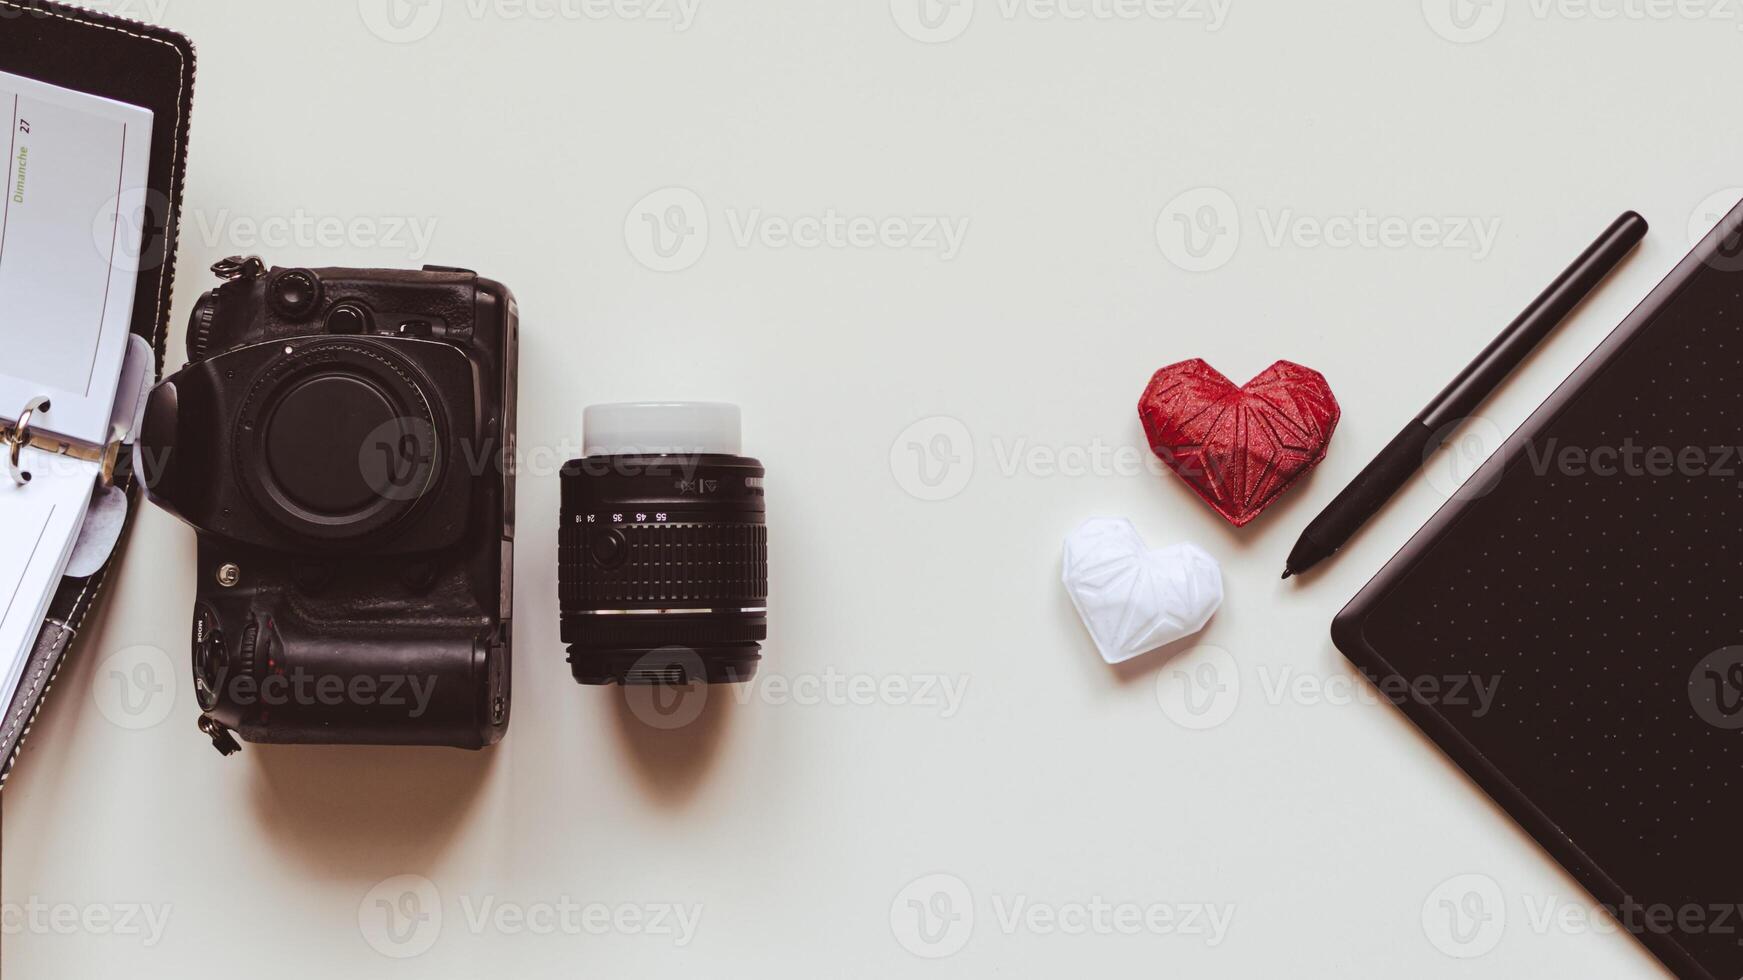 gráfico diseñador puesto de trabajo con cámara réflex digital, lente, agenda, aguja y corazón impreso en 3d foto